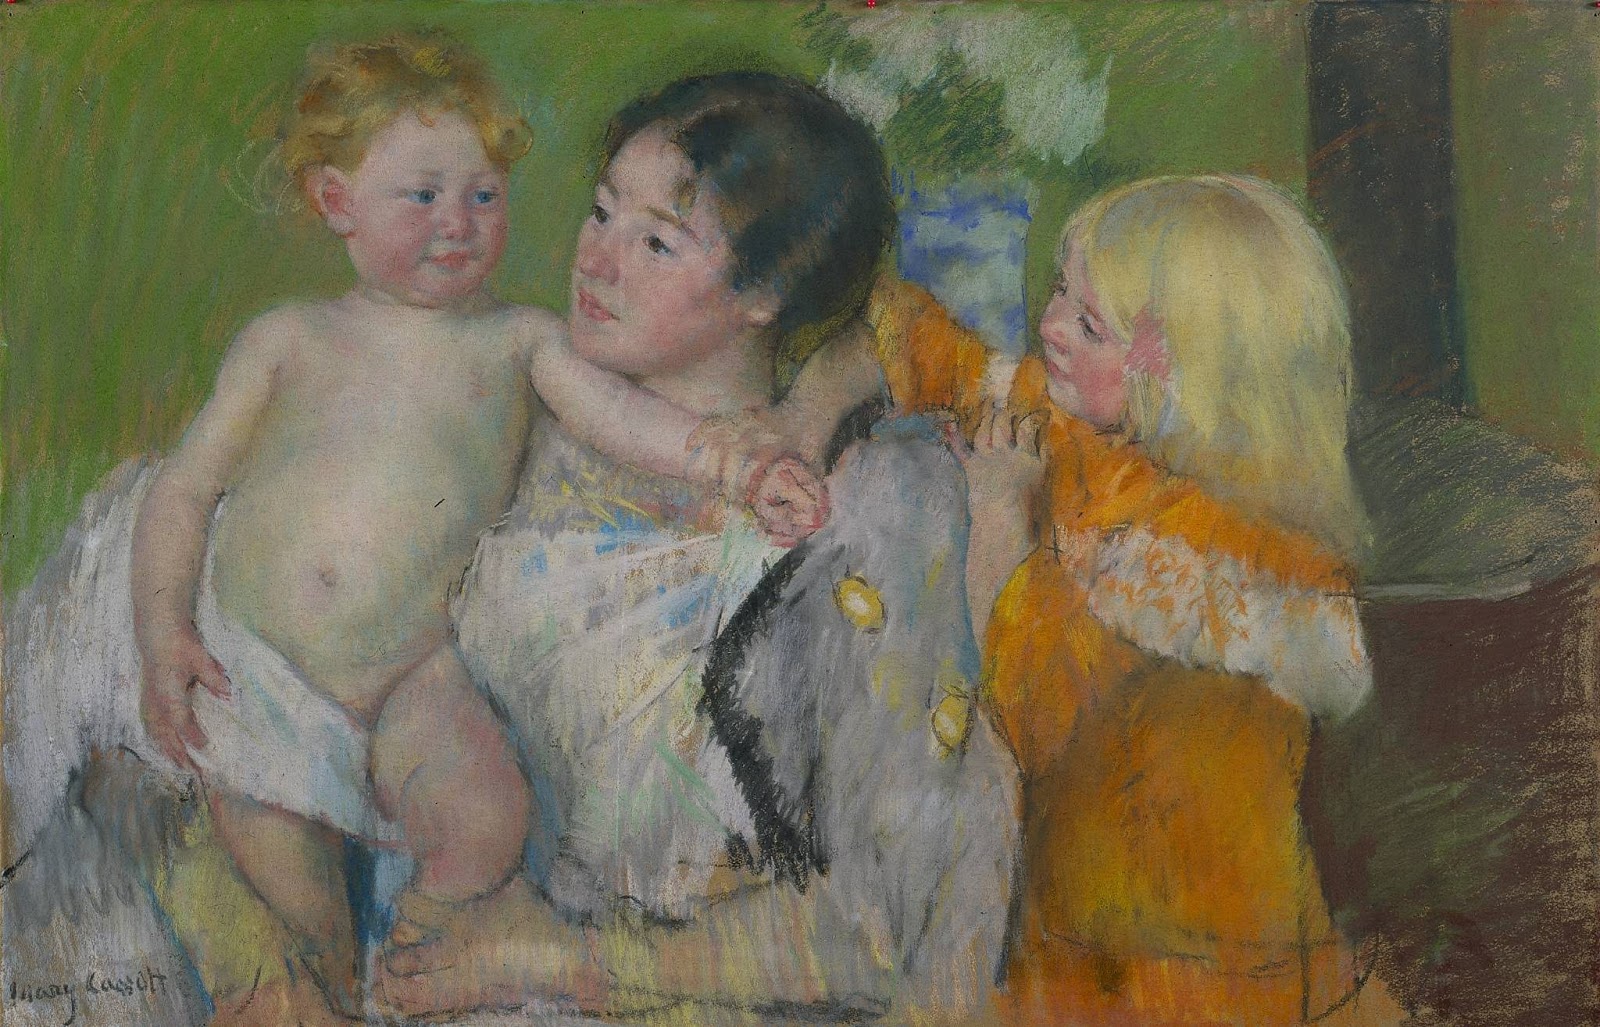 Mary+Cassatt-1844-1926 (209).jpg